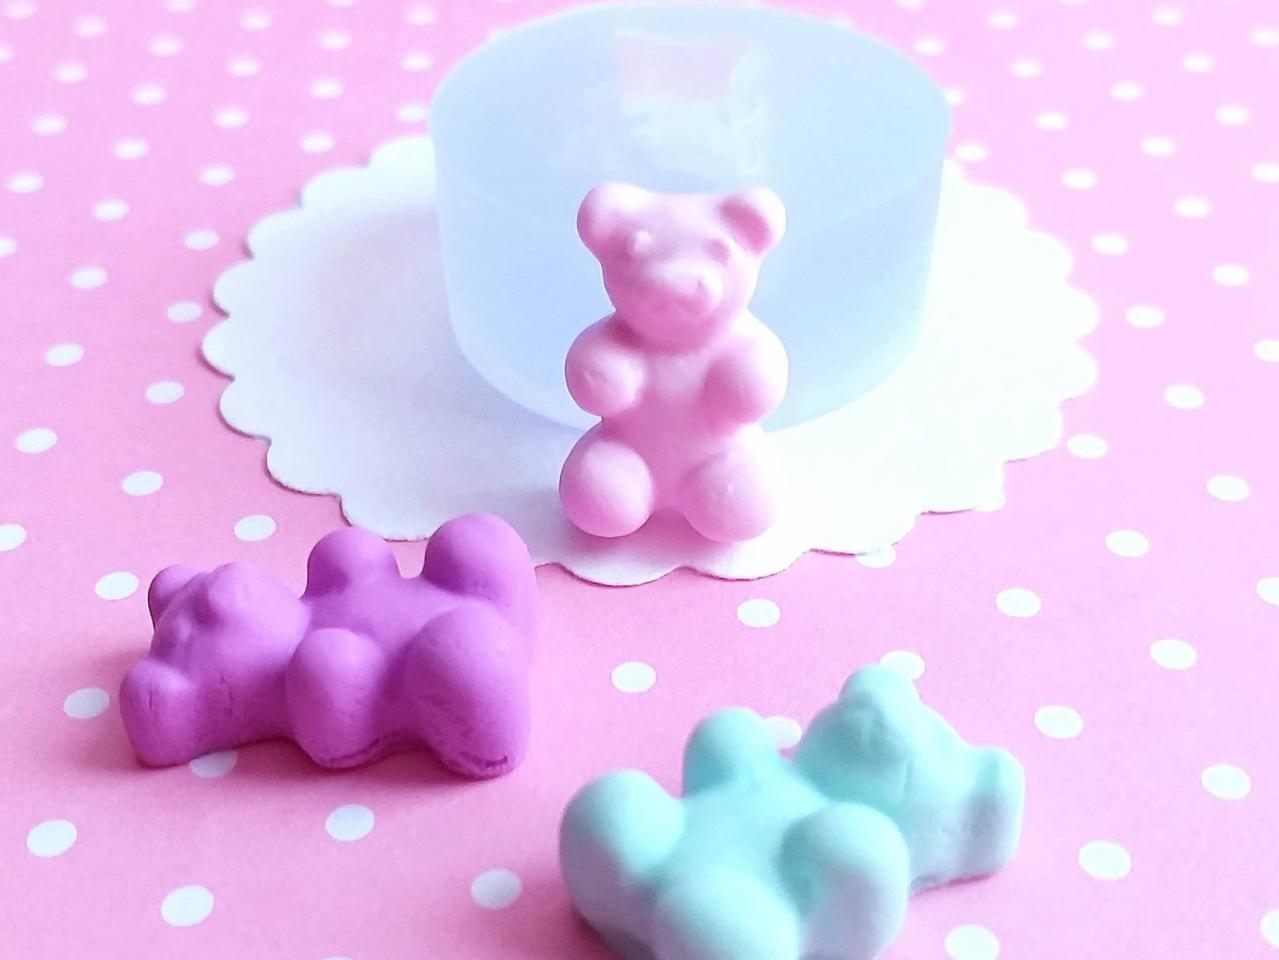 Gummy Bear Mold, Gummy Bear Polymer Clay Mold, Flexible Push Mold, Dollhouse Miniature Mold, Kawaii Decoden, Resin Mold, #17